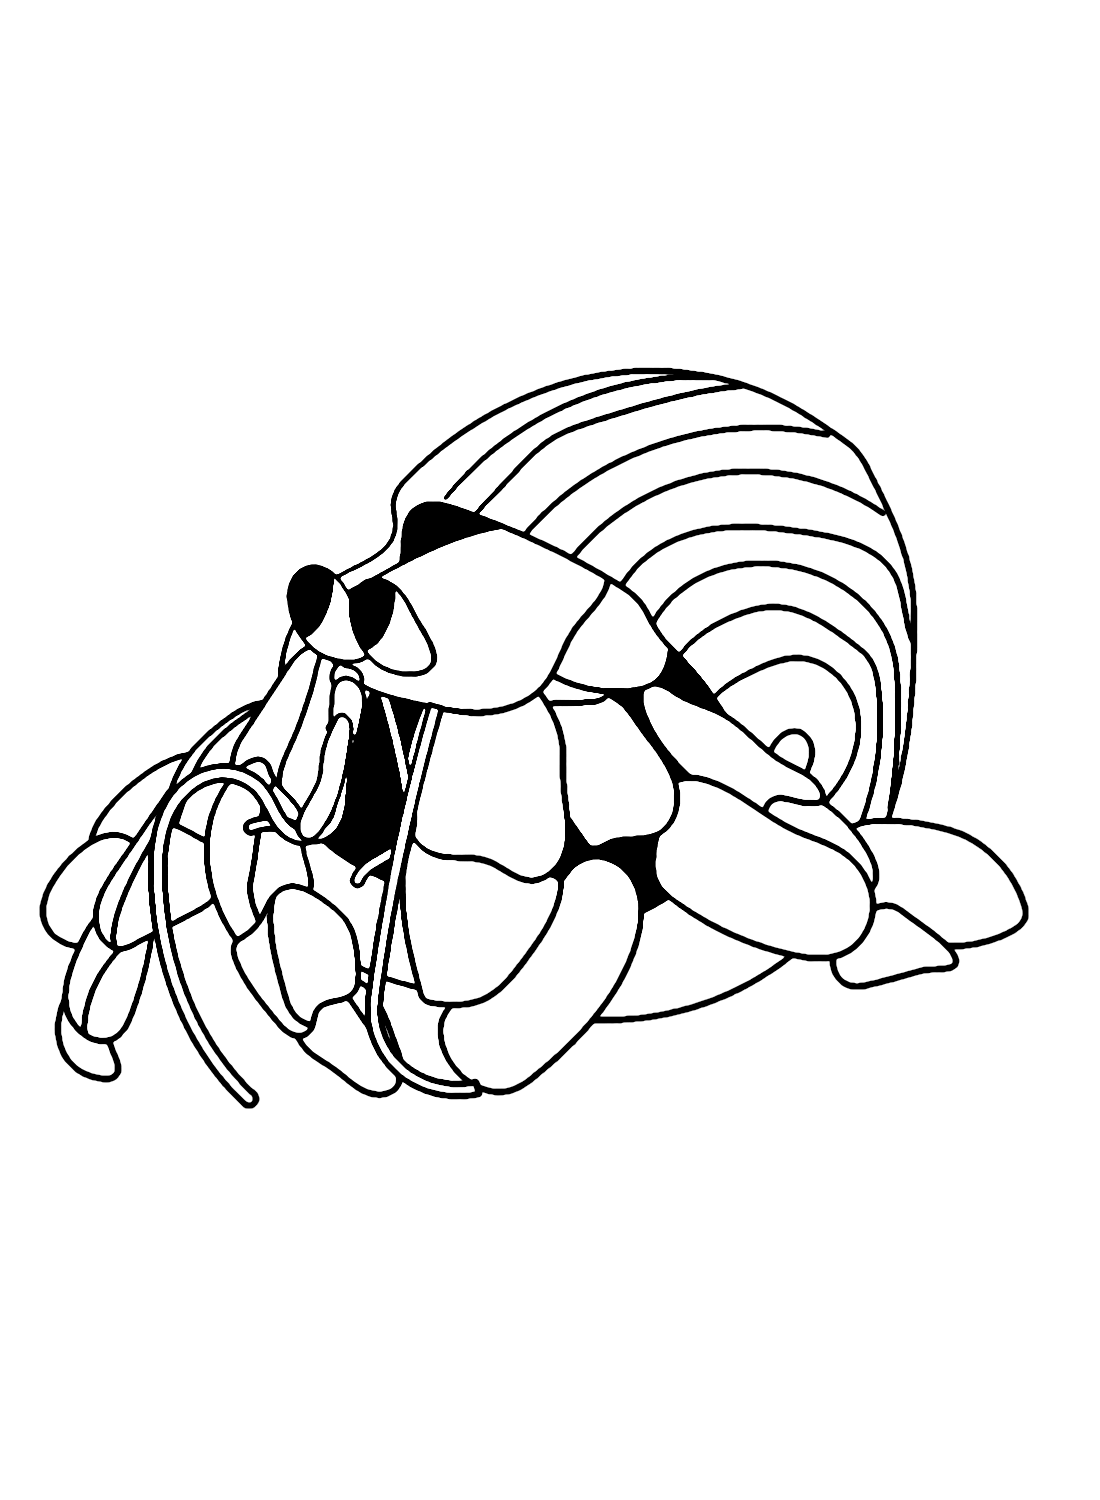 Hermit Crab Underwater from Hermit Crab